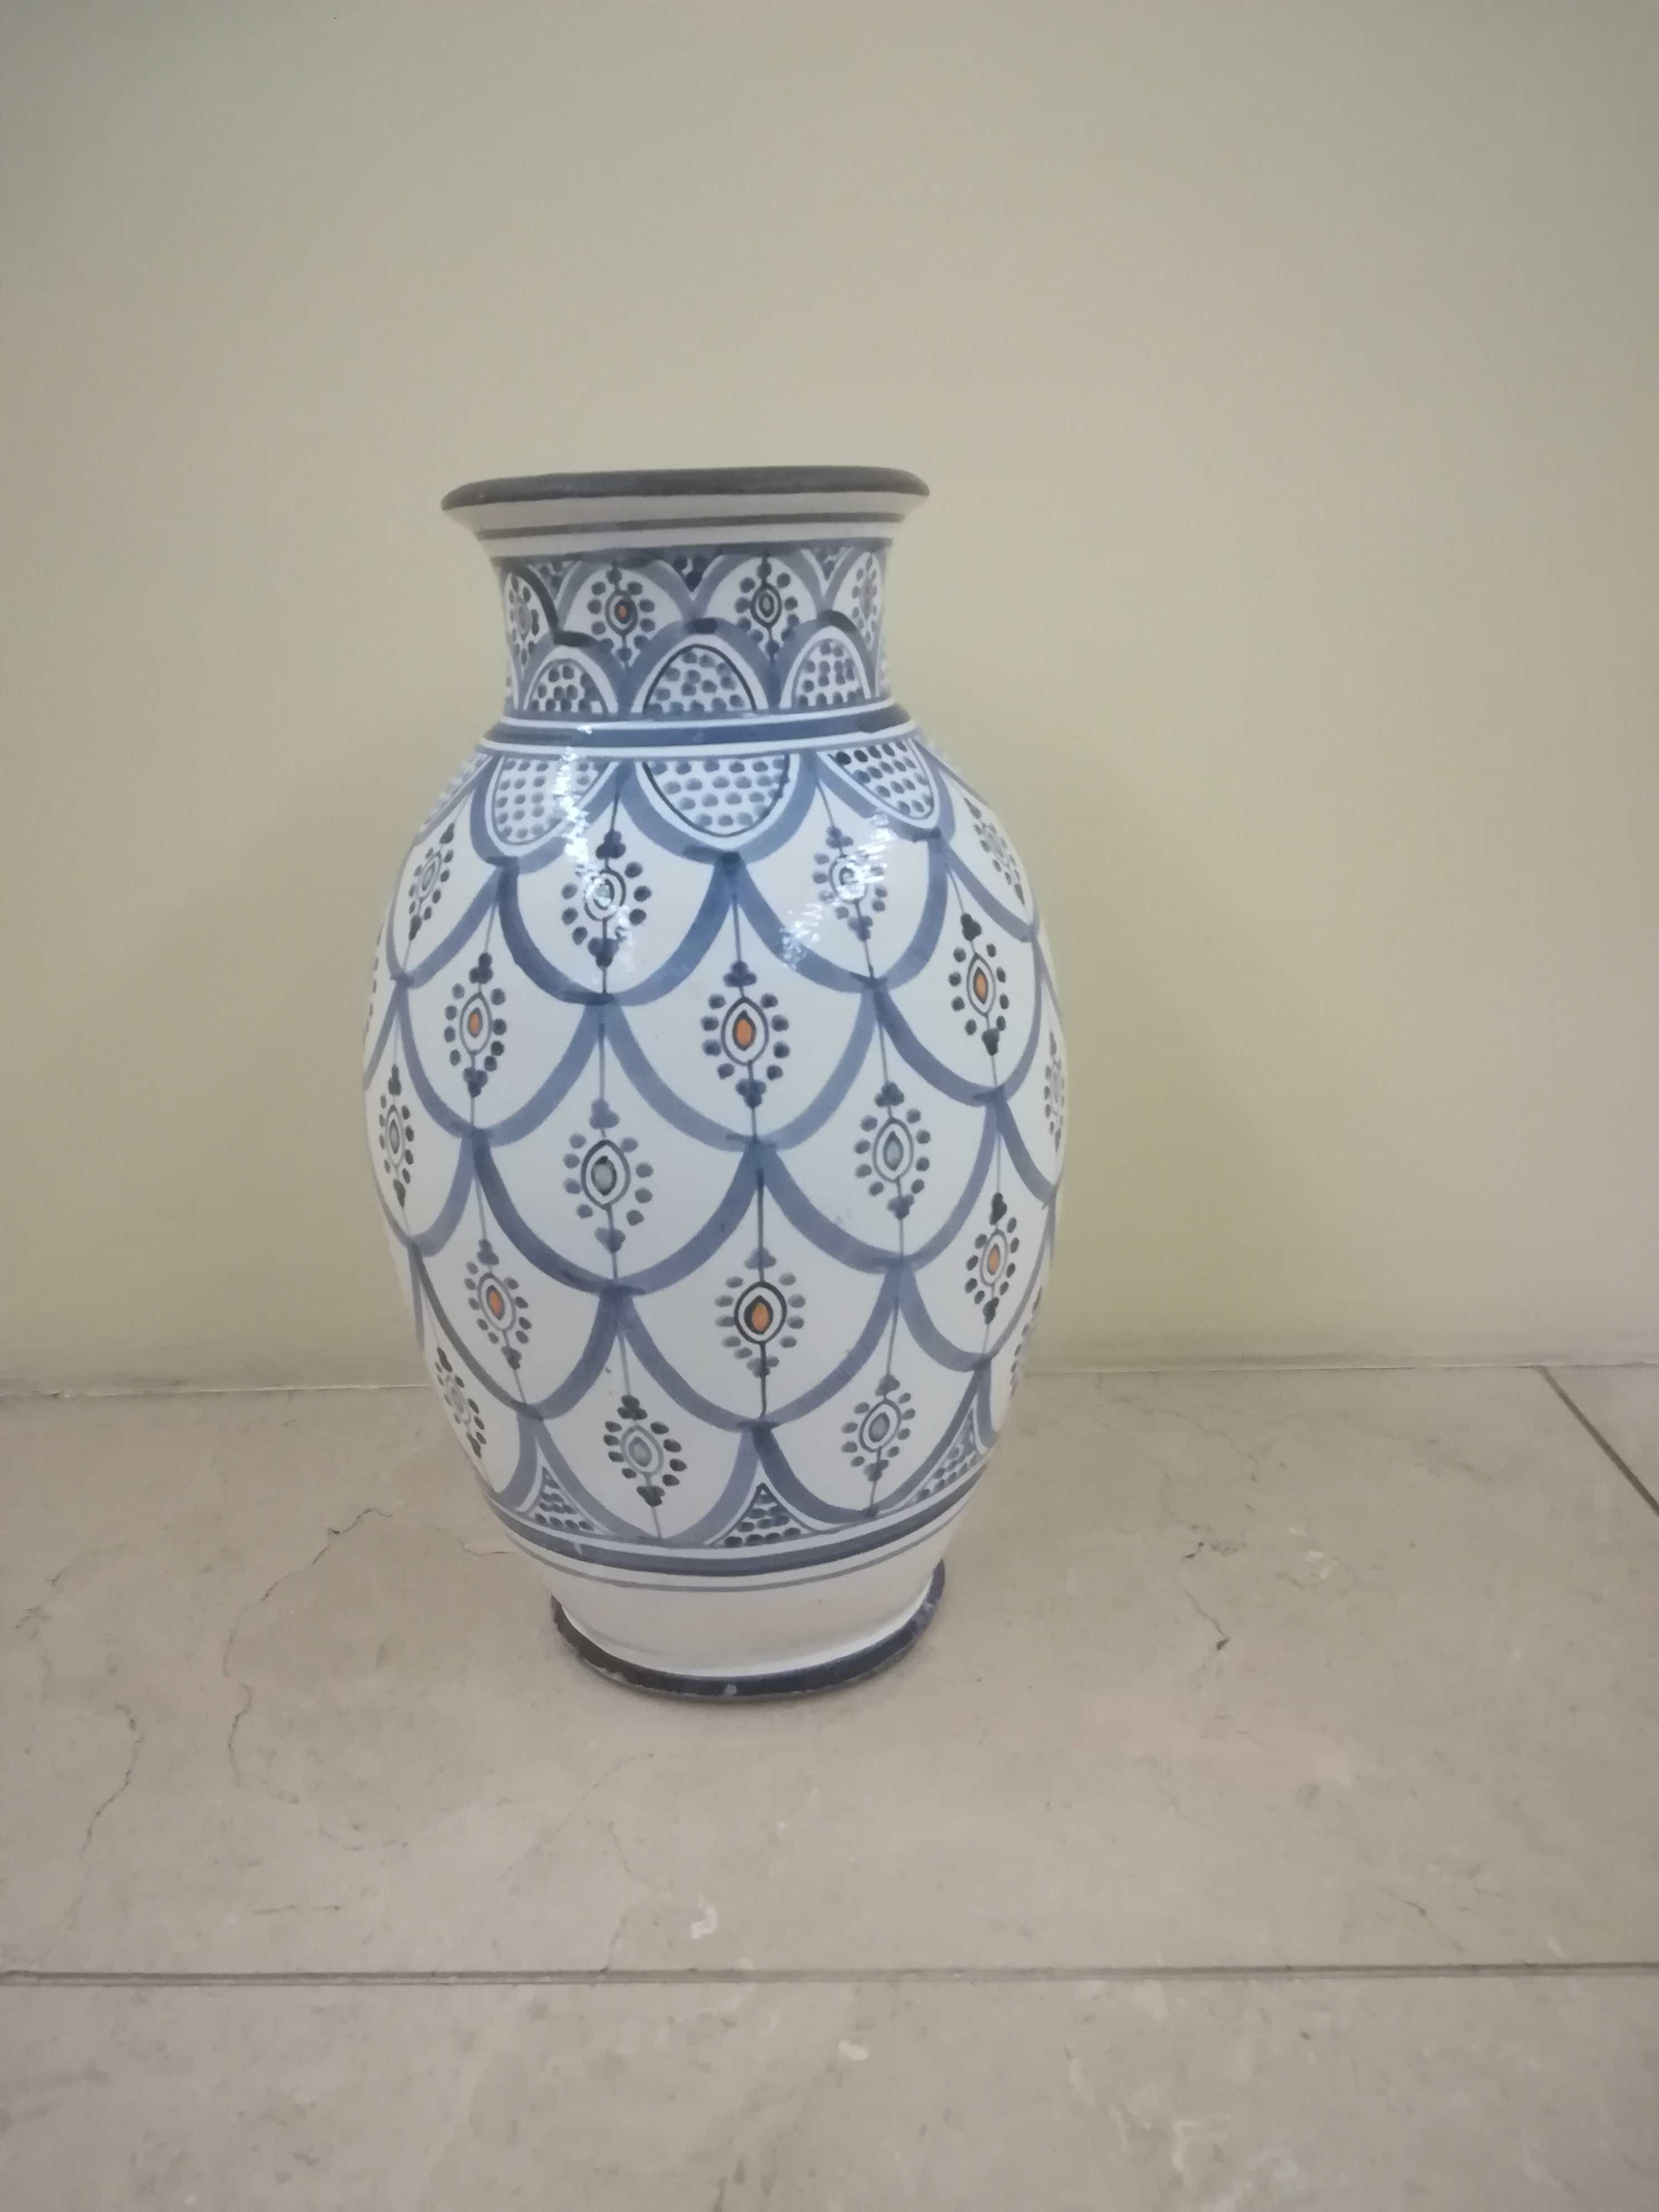 Jarrao/floreira decorativo em cerâmica para interiores